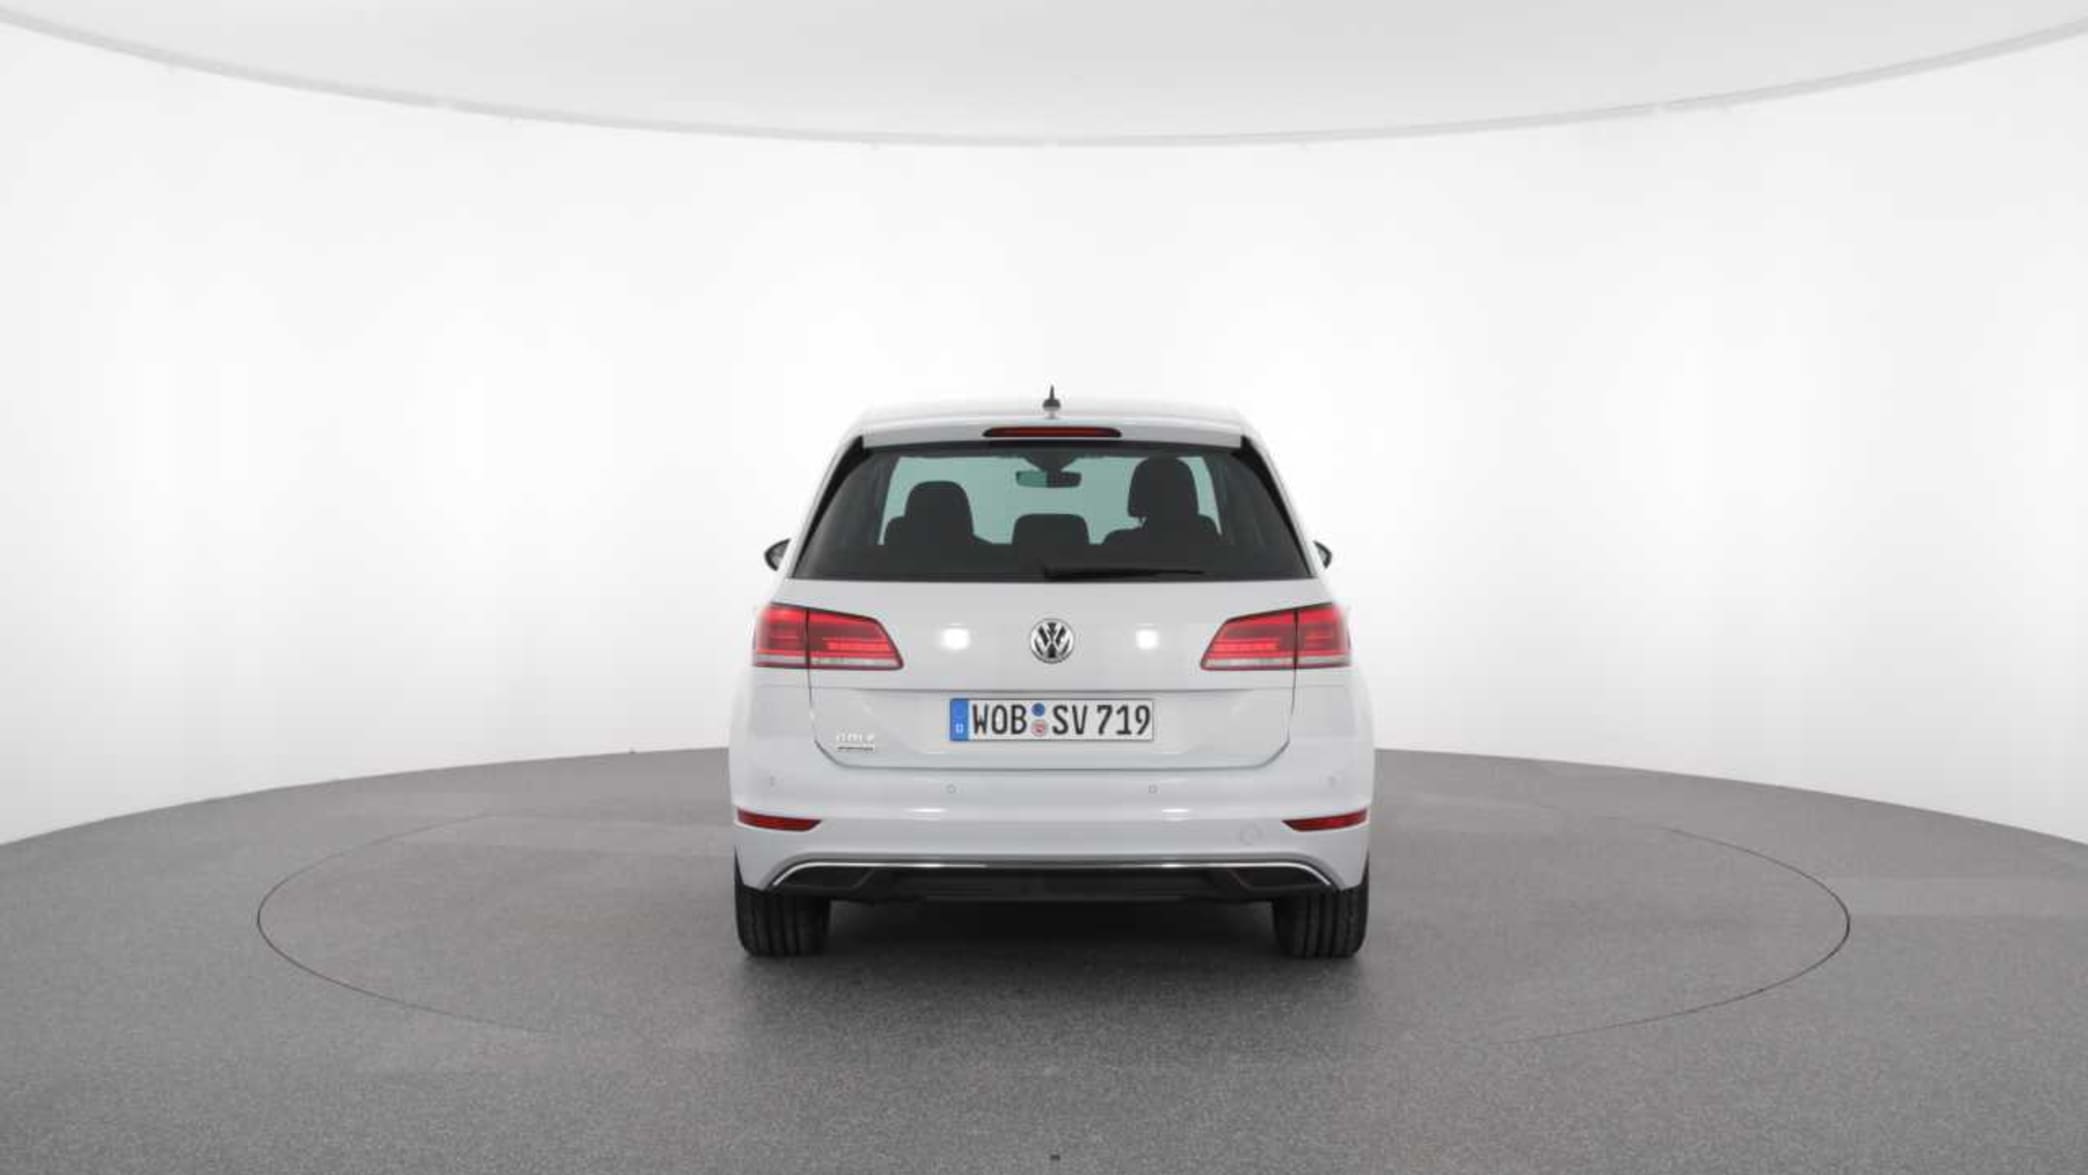 VW Golf Sportsvan ▻ Alle Generationen, neue Modelle, Tests